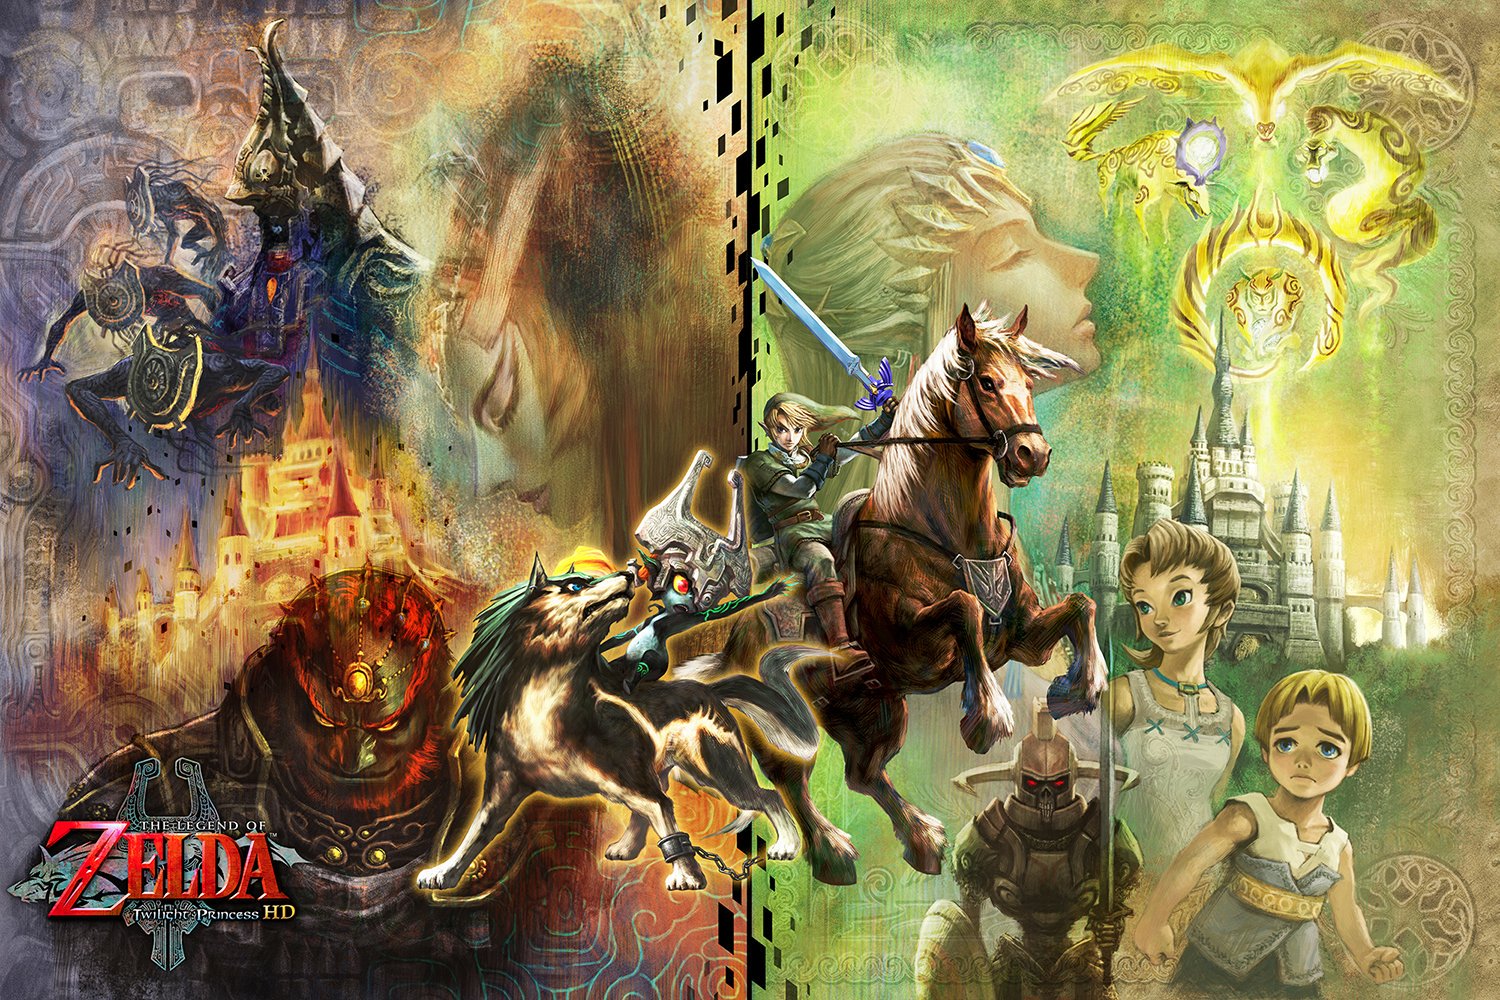 HQ Legend Of Zelda: Twilight Princess Wallpapers | File 491.79Kb